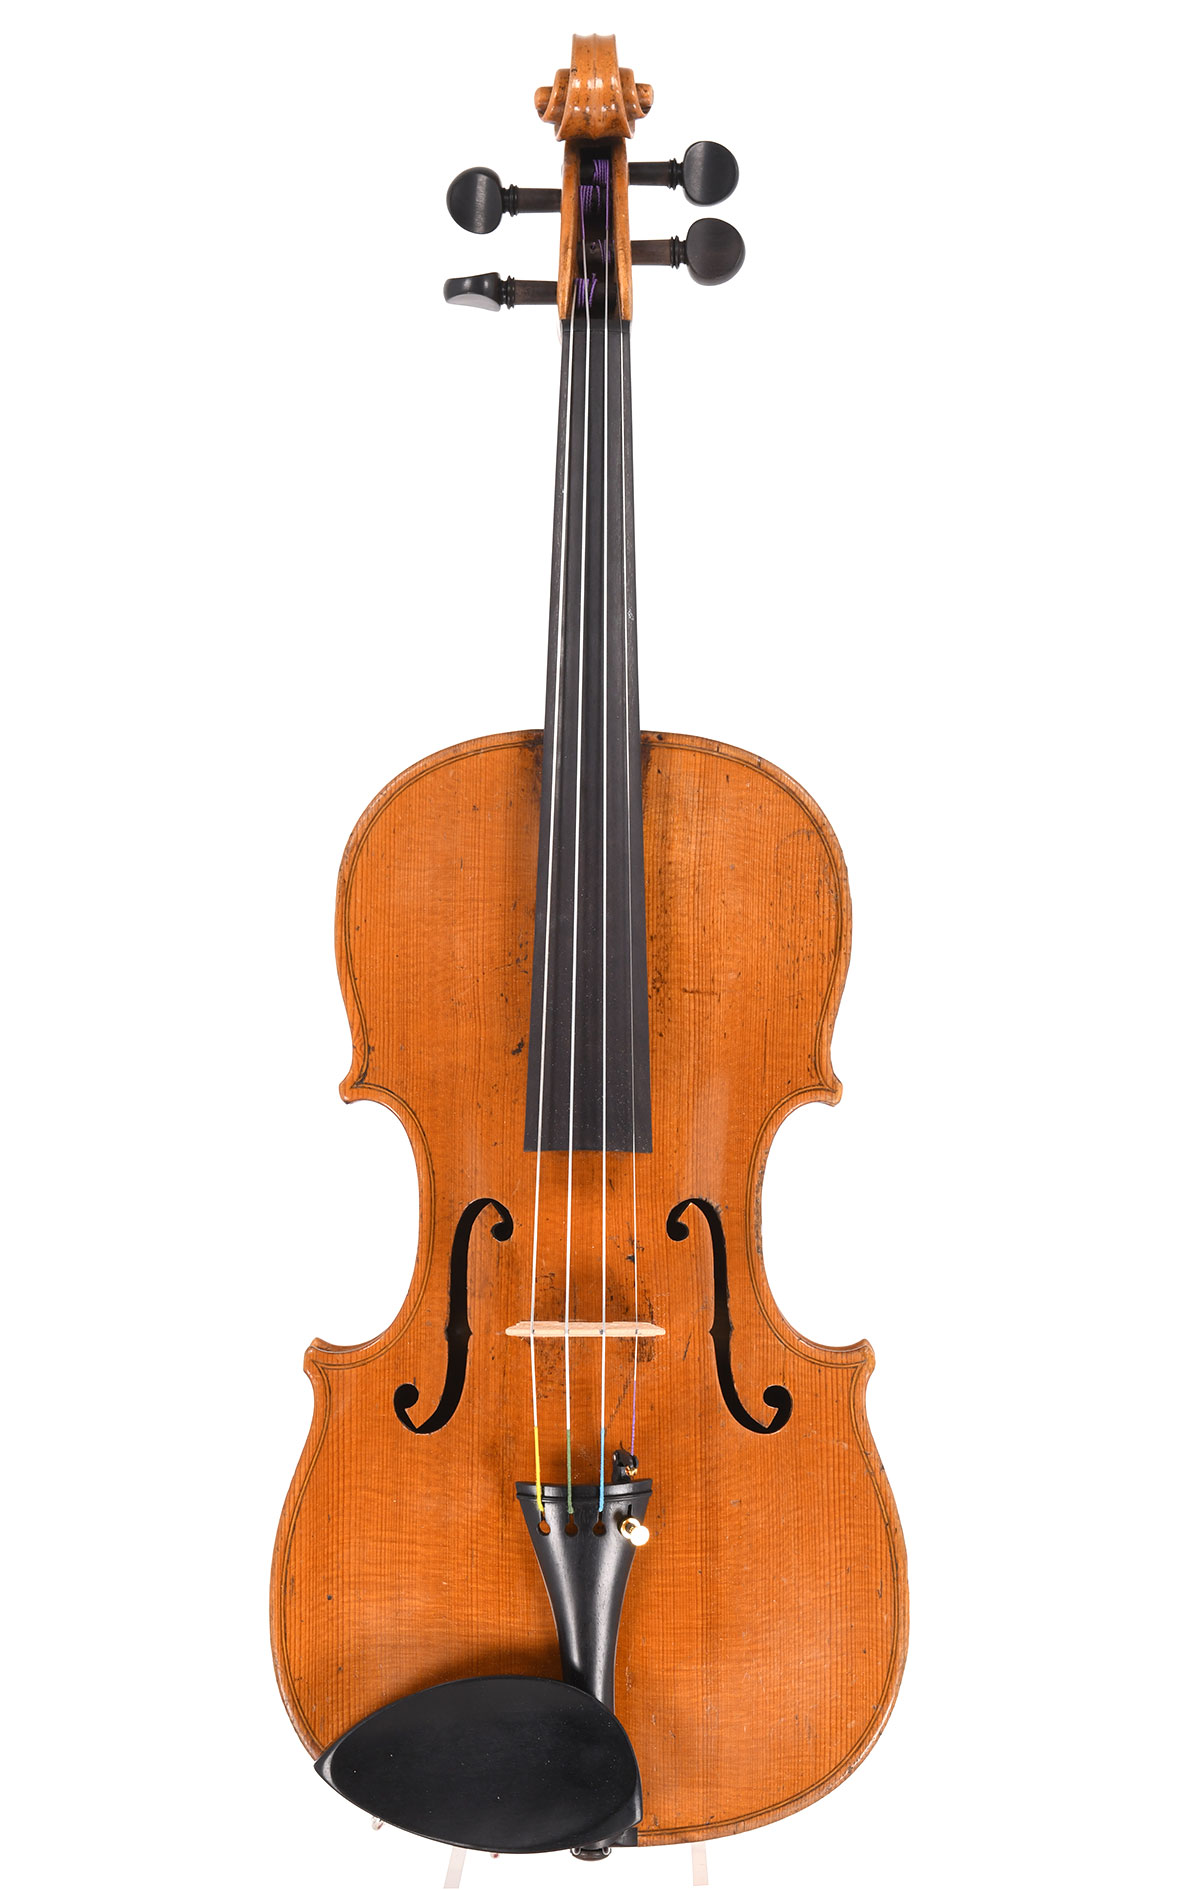 David Hopf violon de Klingenthal